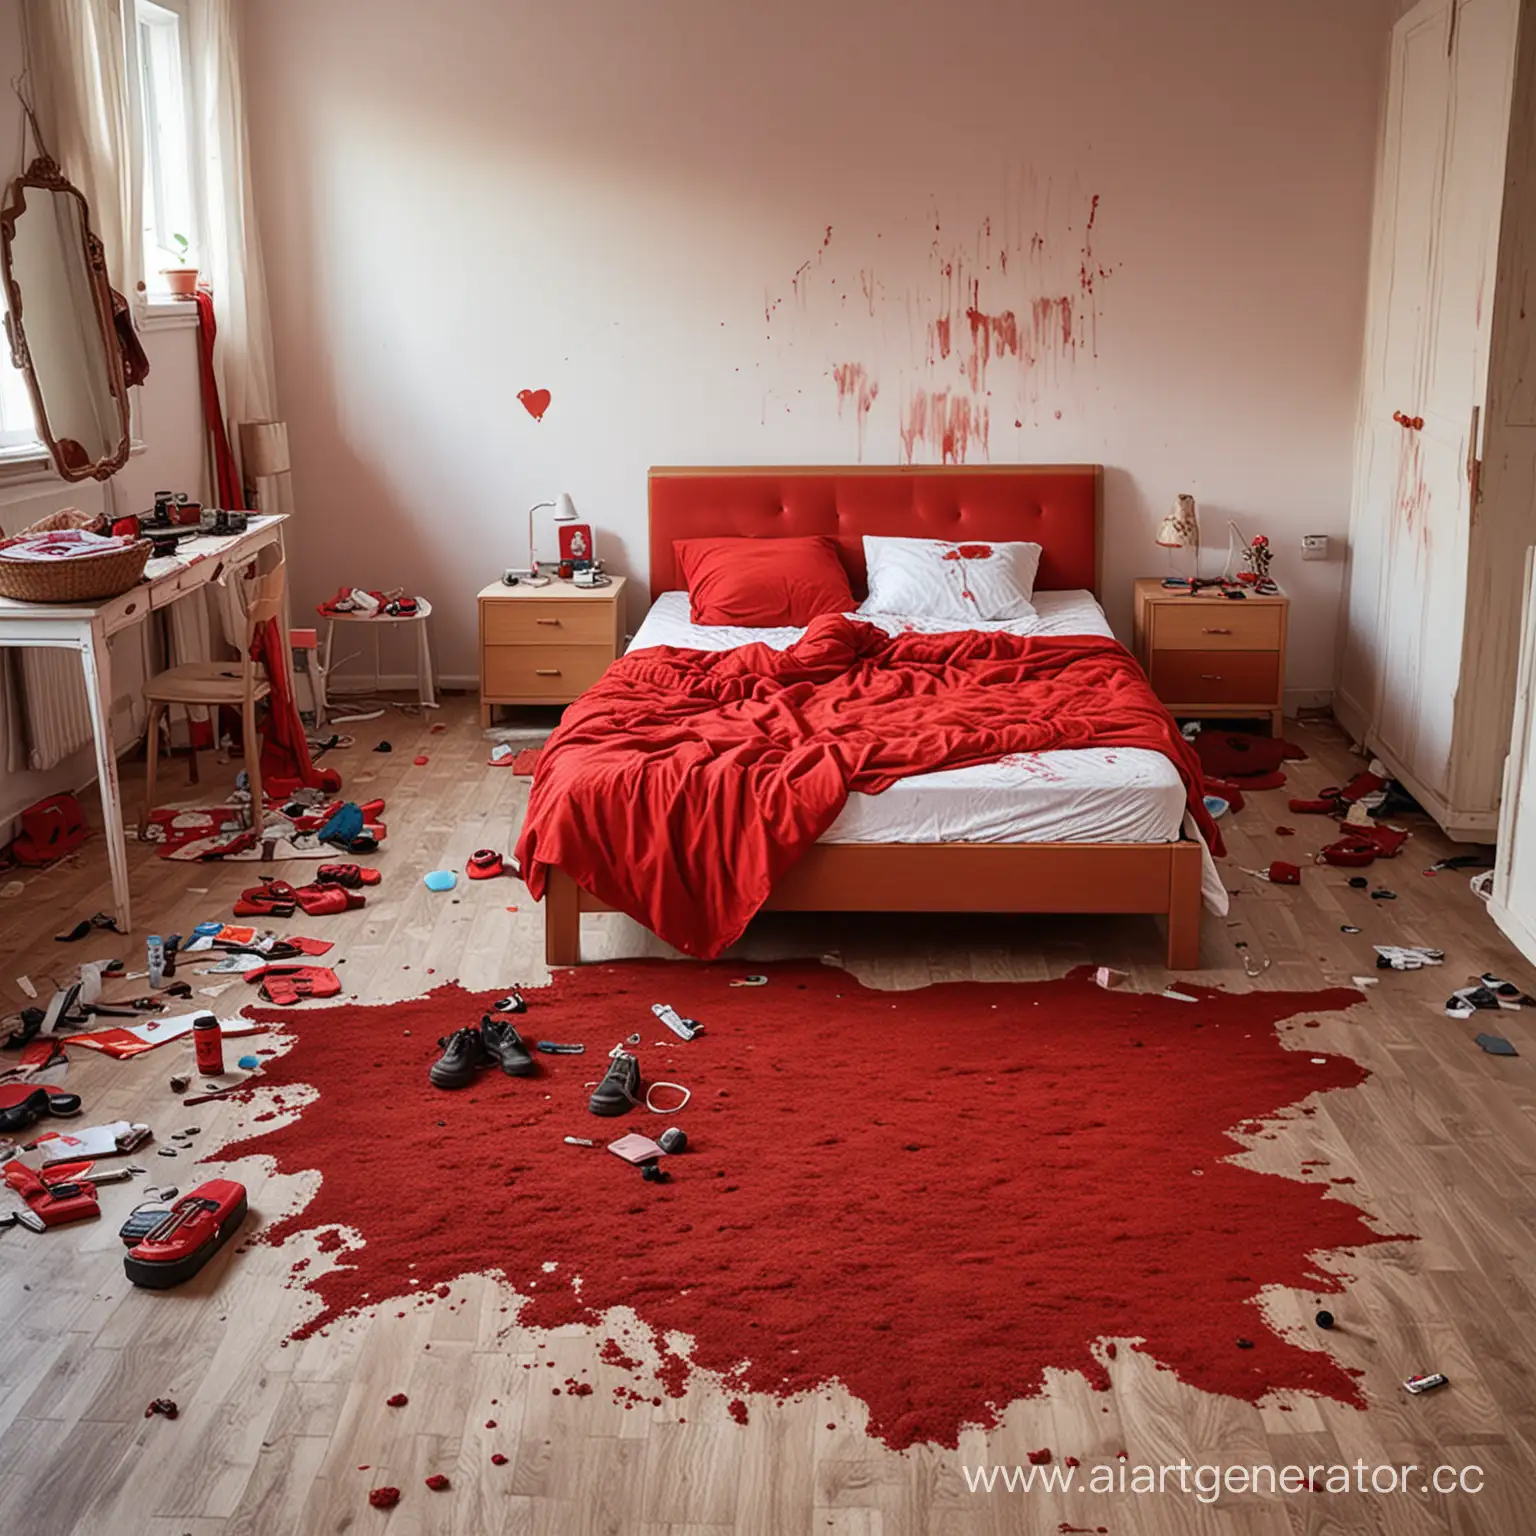 Не убранная спальня
На полу в спальне обведен силует девушки красным цветом
В спальне работают спецслужбы